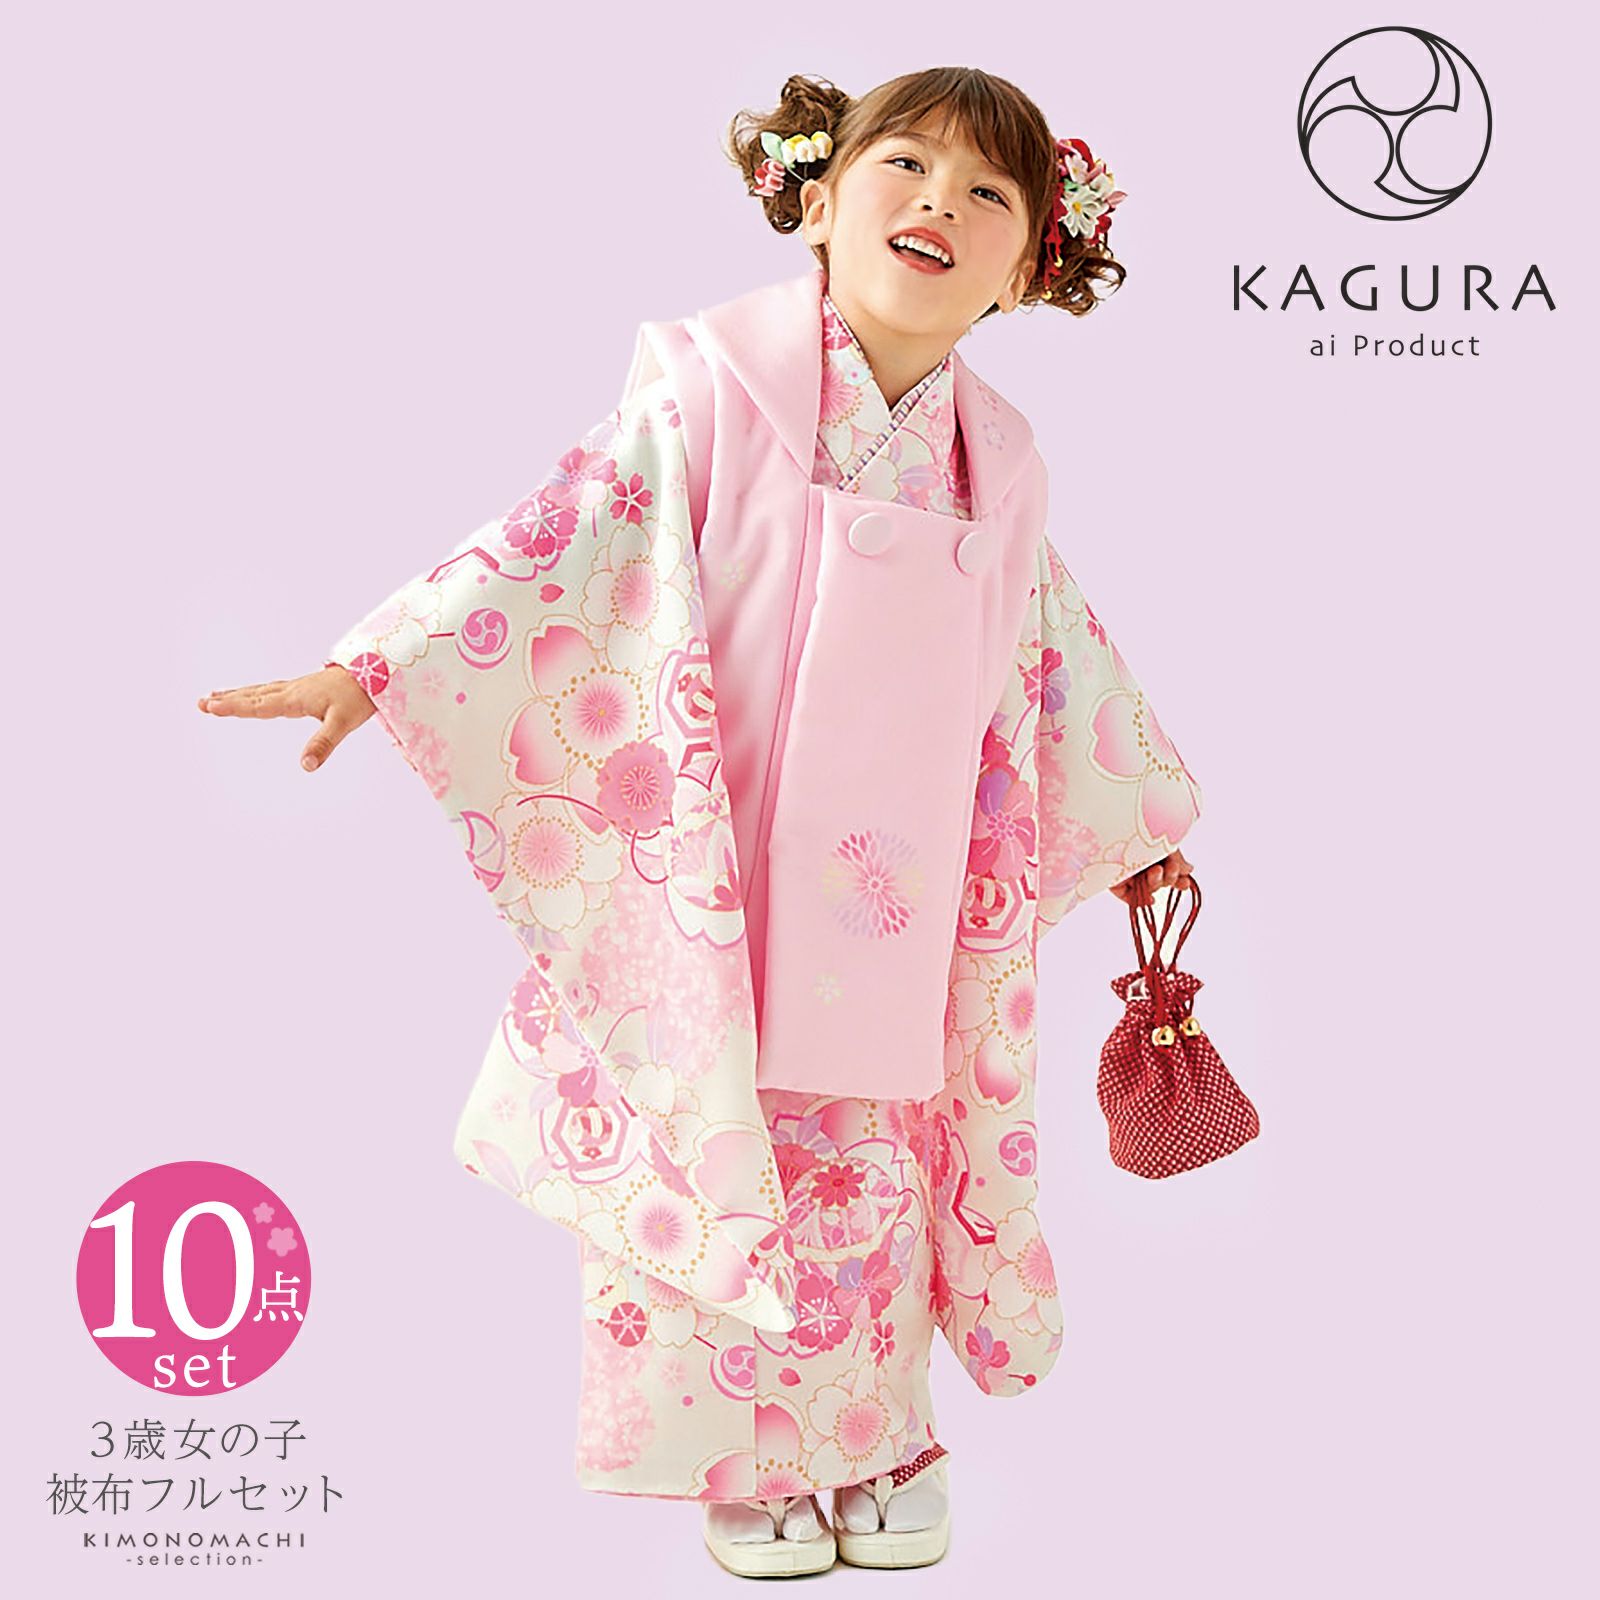 七五三 着物 3歳 女の子 ブランド被布セット KAGURA カグラ 「クリームピンク　桜手毬」 三歳女児被布セット 子供着物 フルセット  三才のお祝い着 3才向け 日本製 【メール便不可】 | 京都きもの町